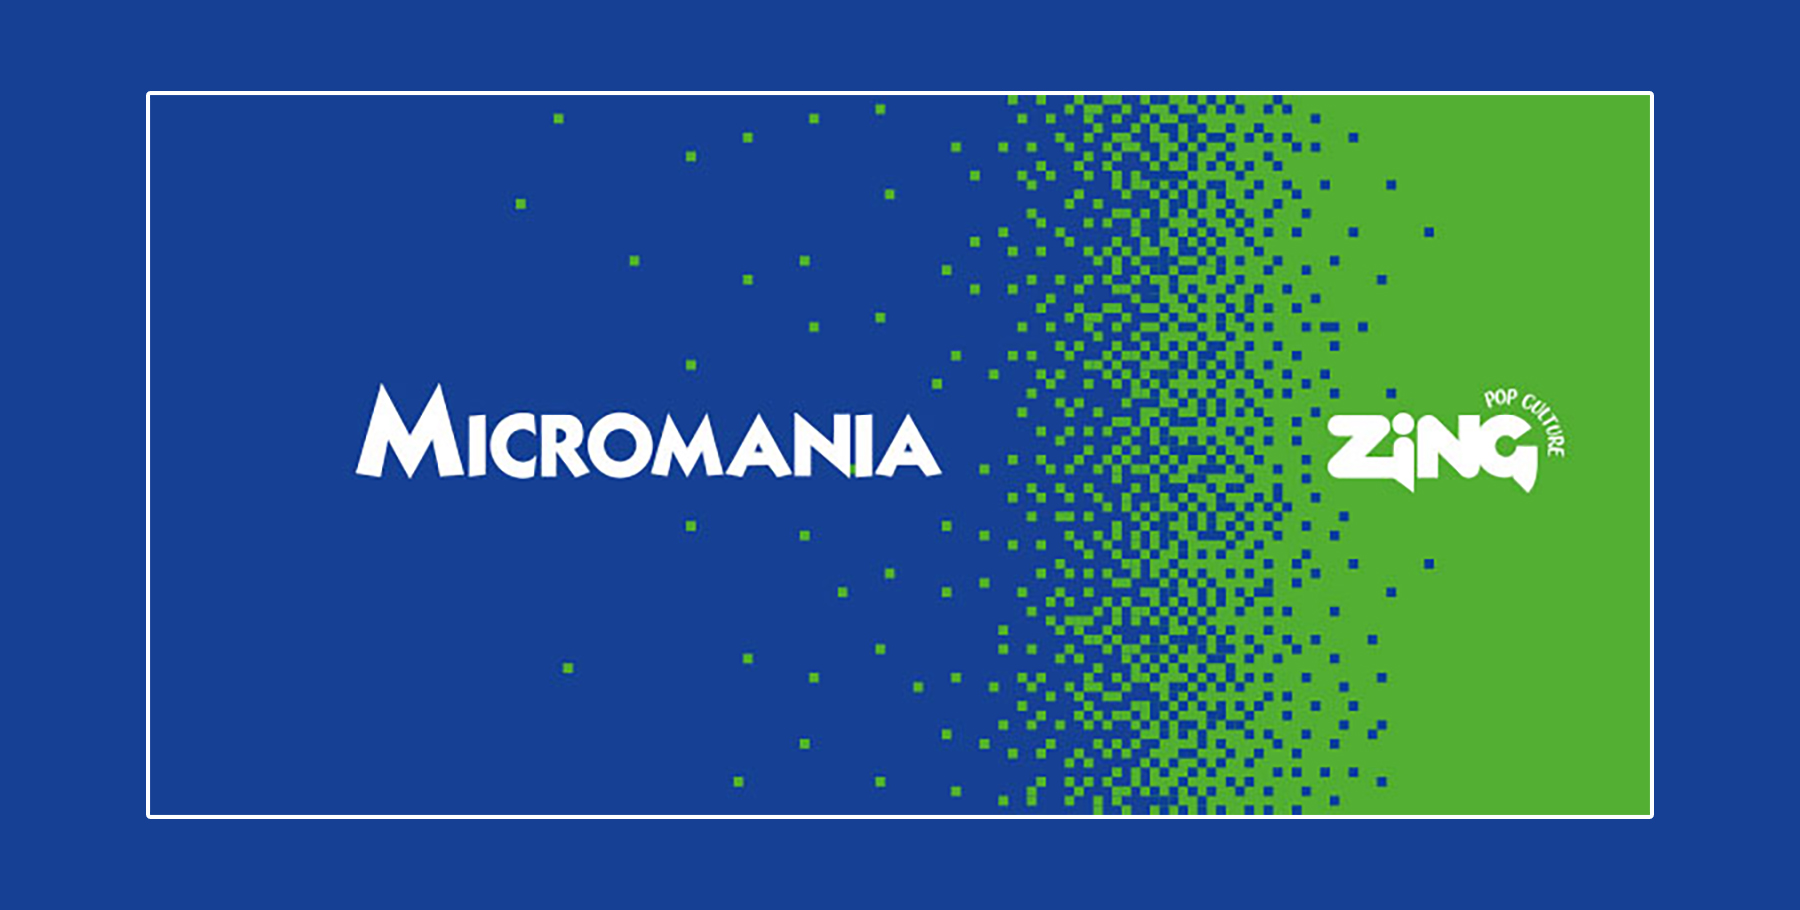 Micromania wiki: तपाईलाई कन्सोल, PC र पोर्टेबल कन्सोल भिडियो गेमहरूमा विशेषज्ञको बारेमा जान्न आवश्यक छ।